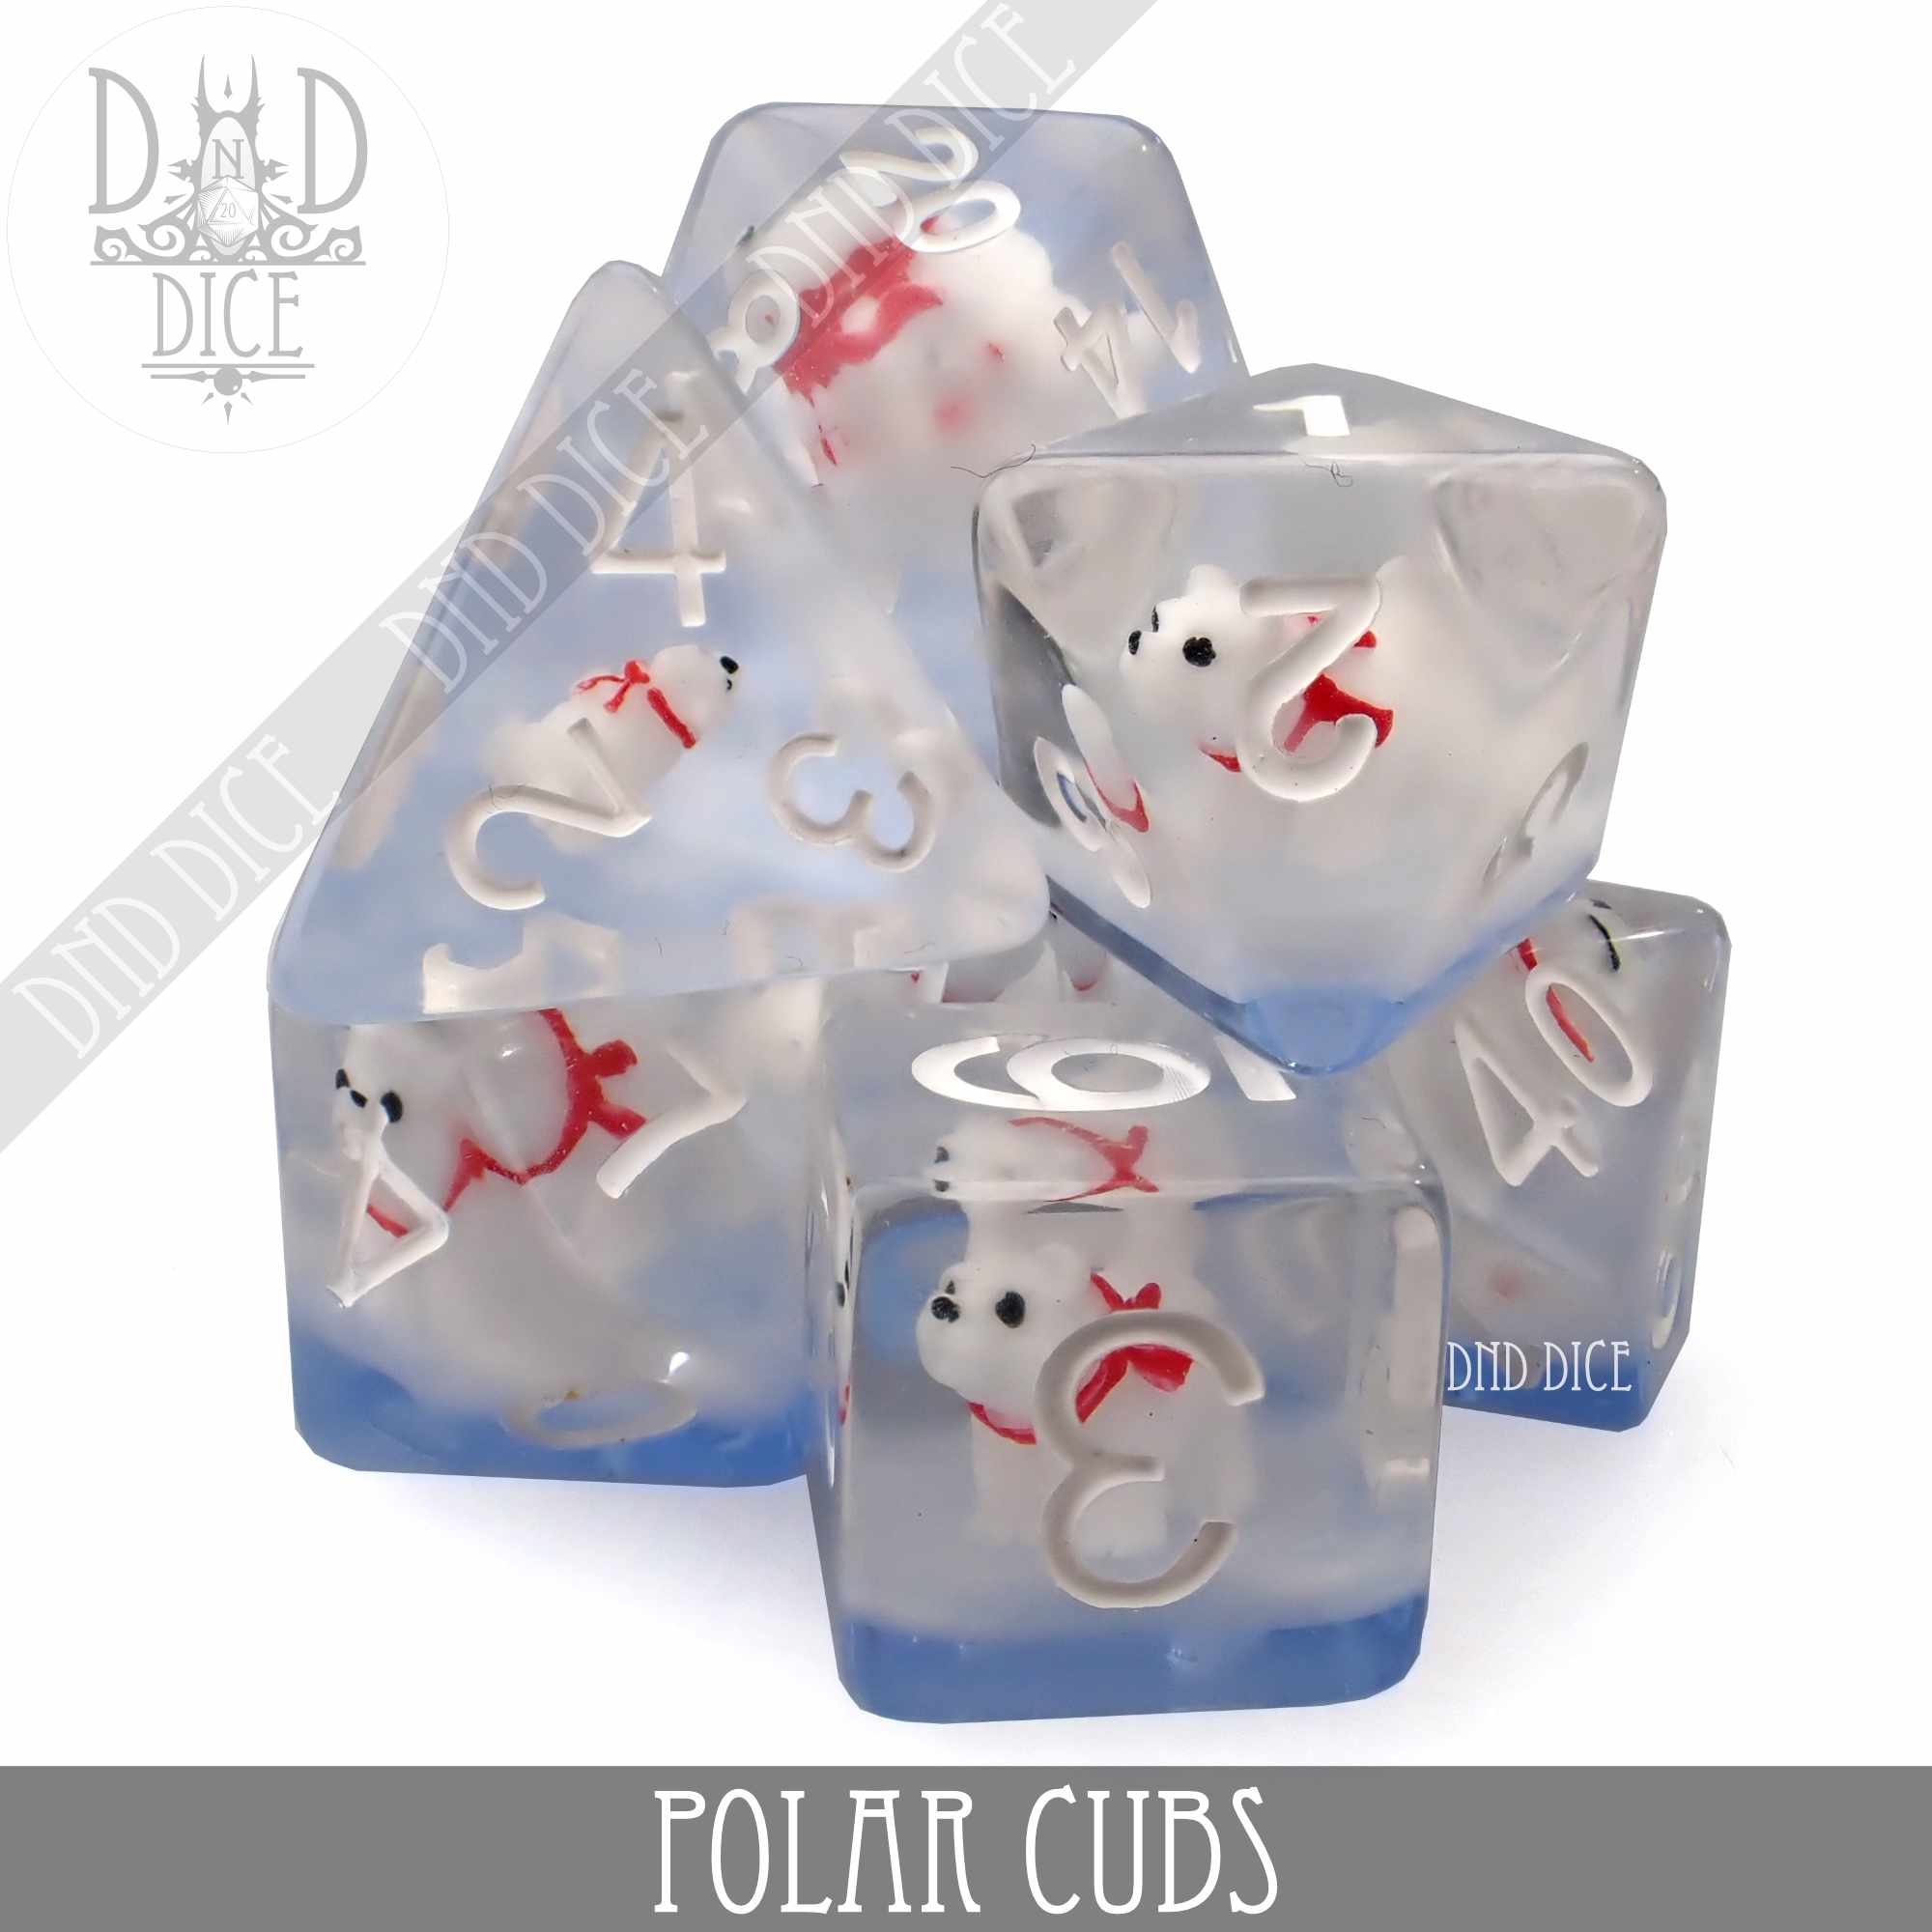 Polar Cubs Dice Set